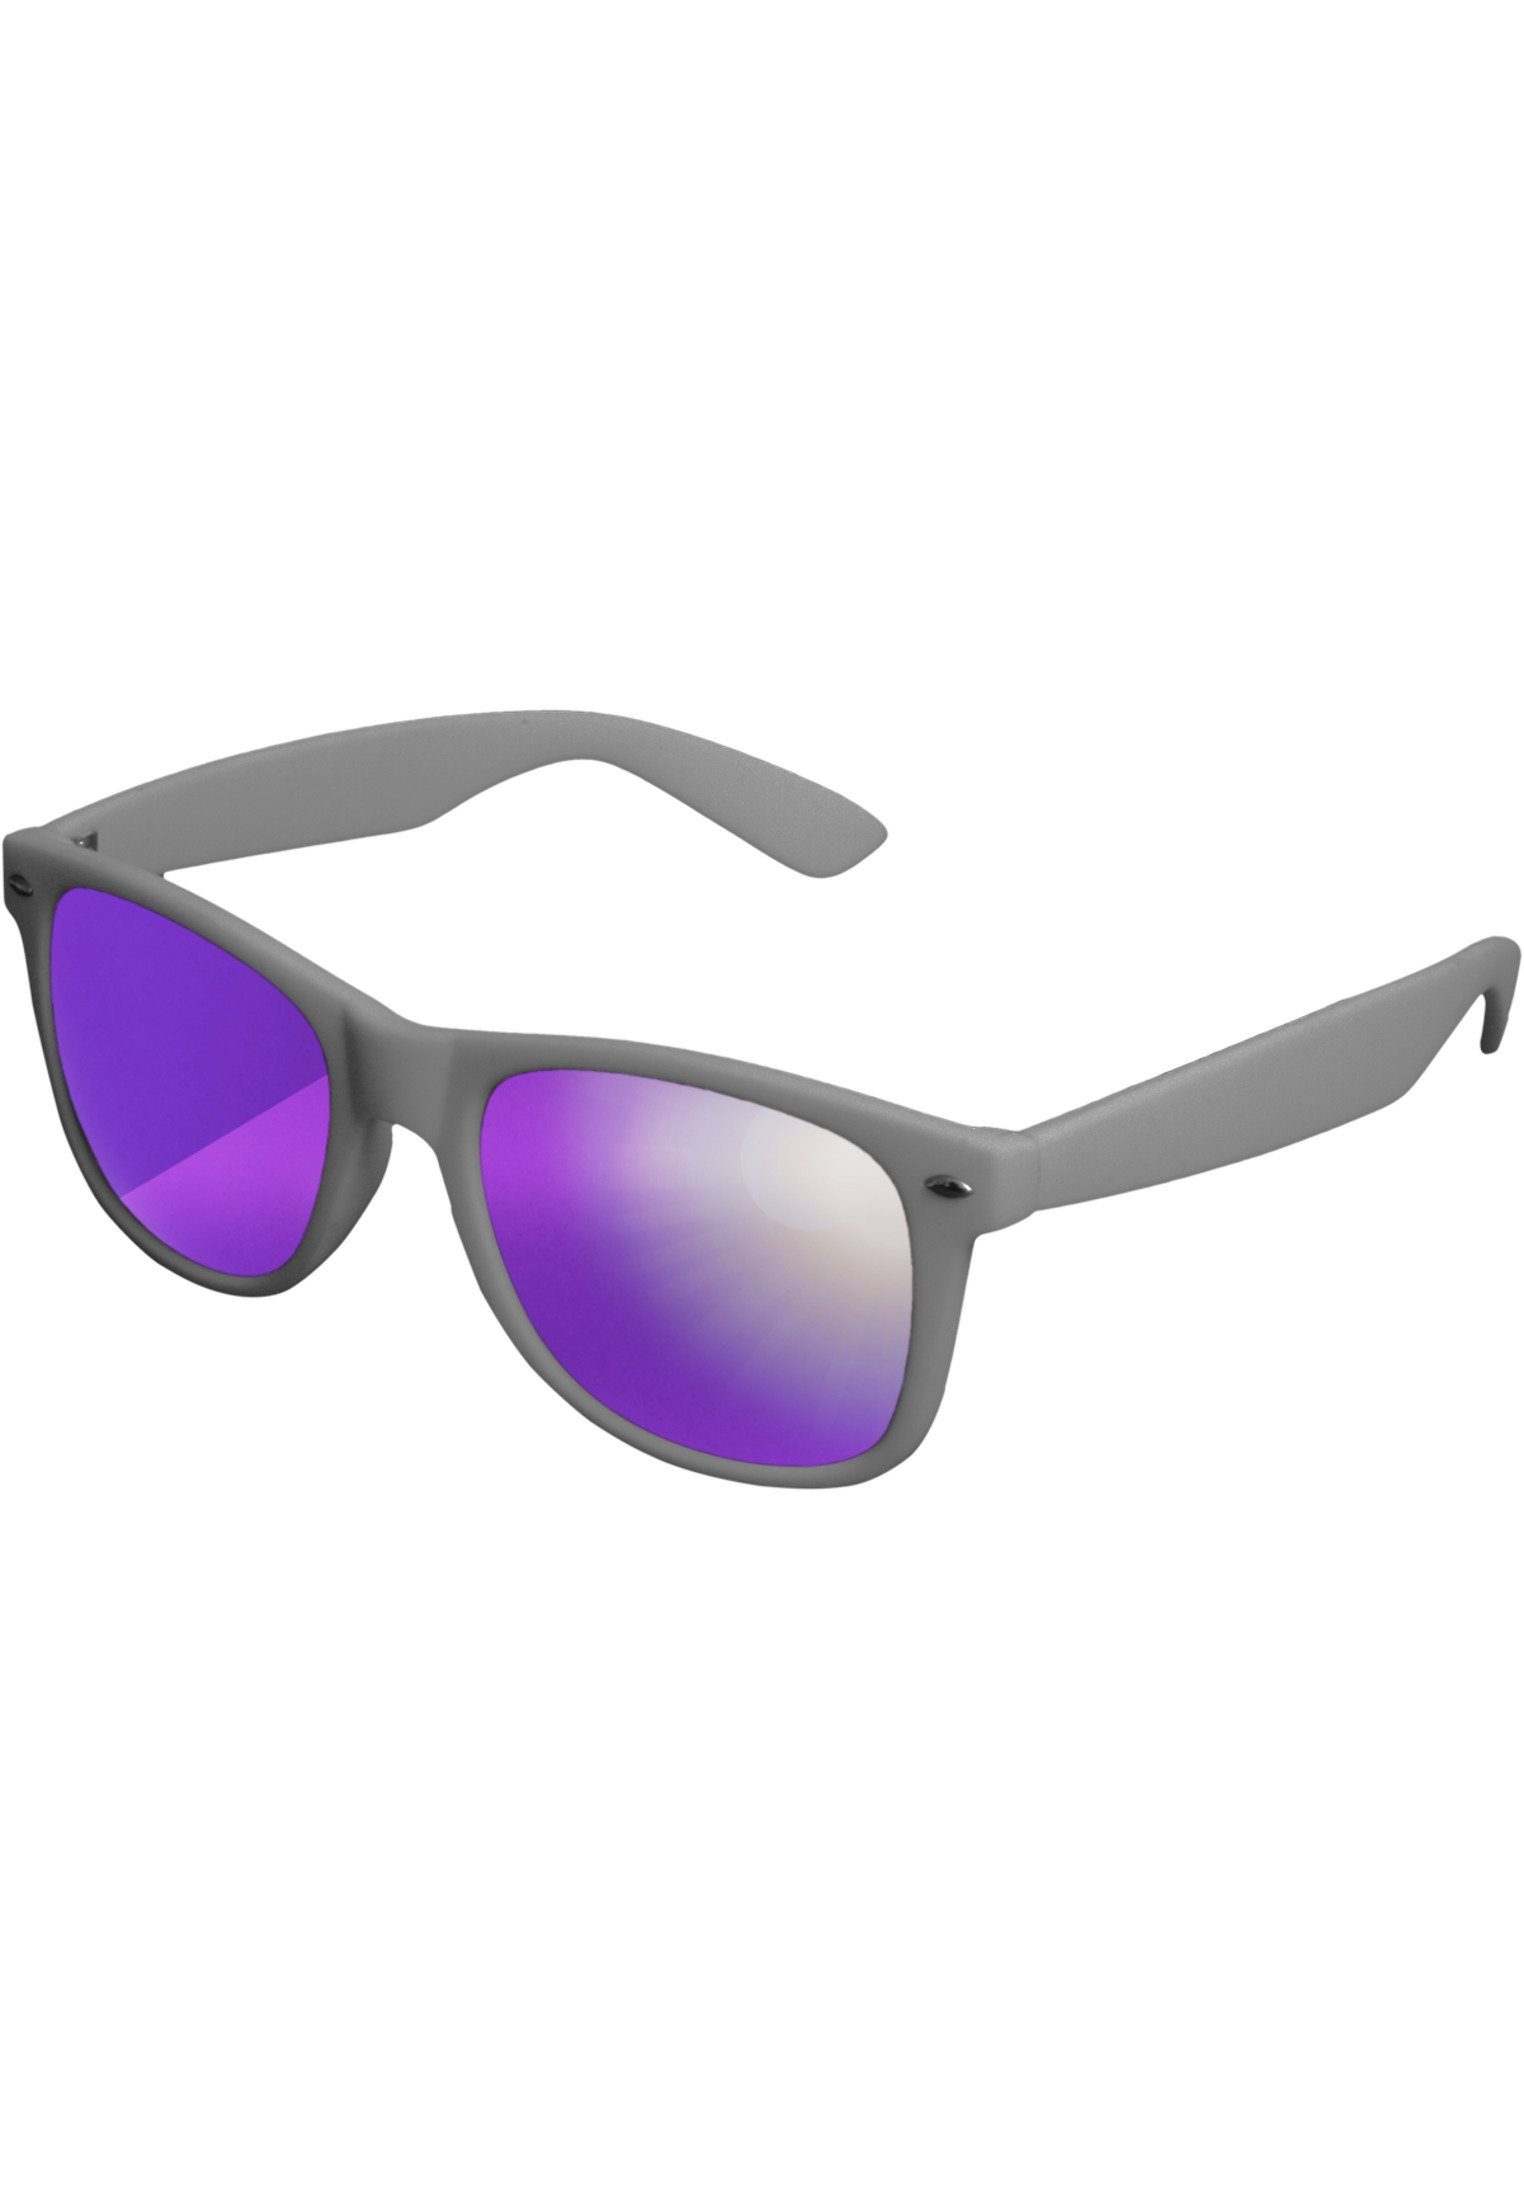 Beliebte Neuware MSTRDS Sonnenbrille auch im geeignet Accessoires Sport Likoma Sunglasses Ideal Mirror, Freien für